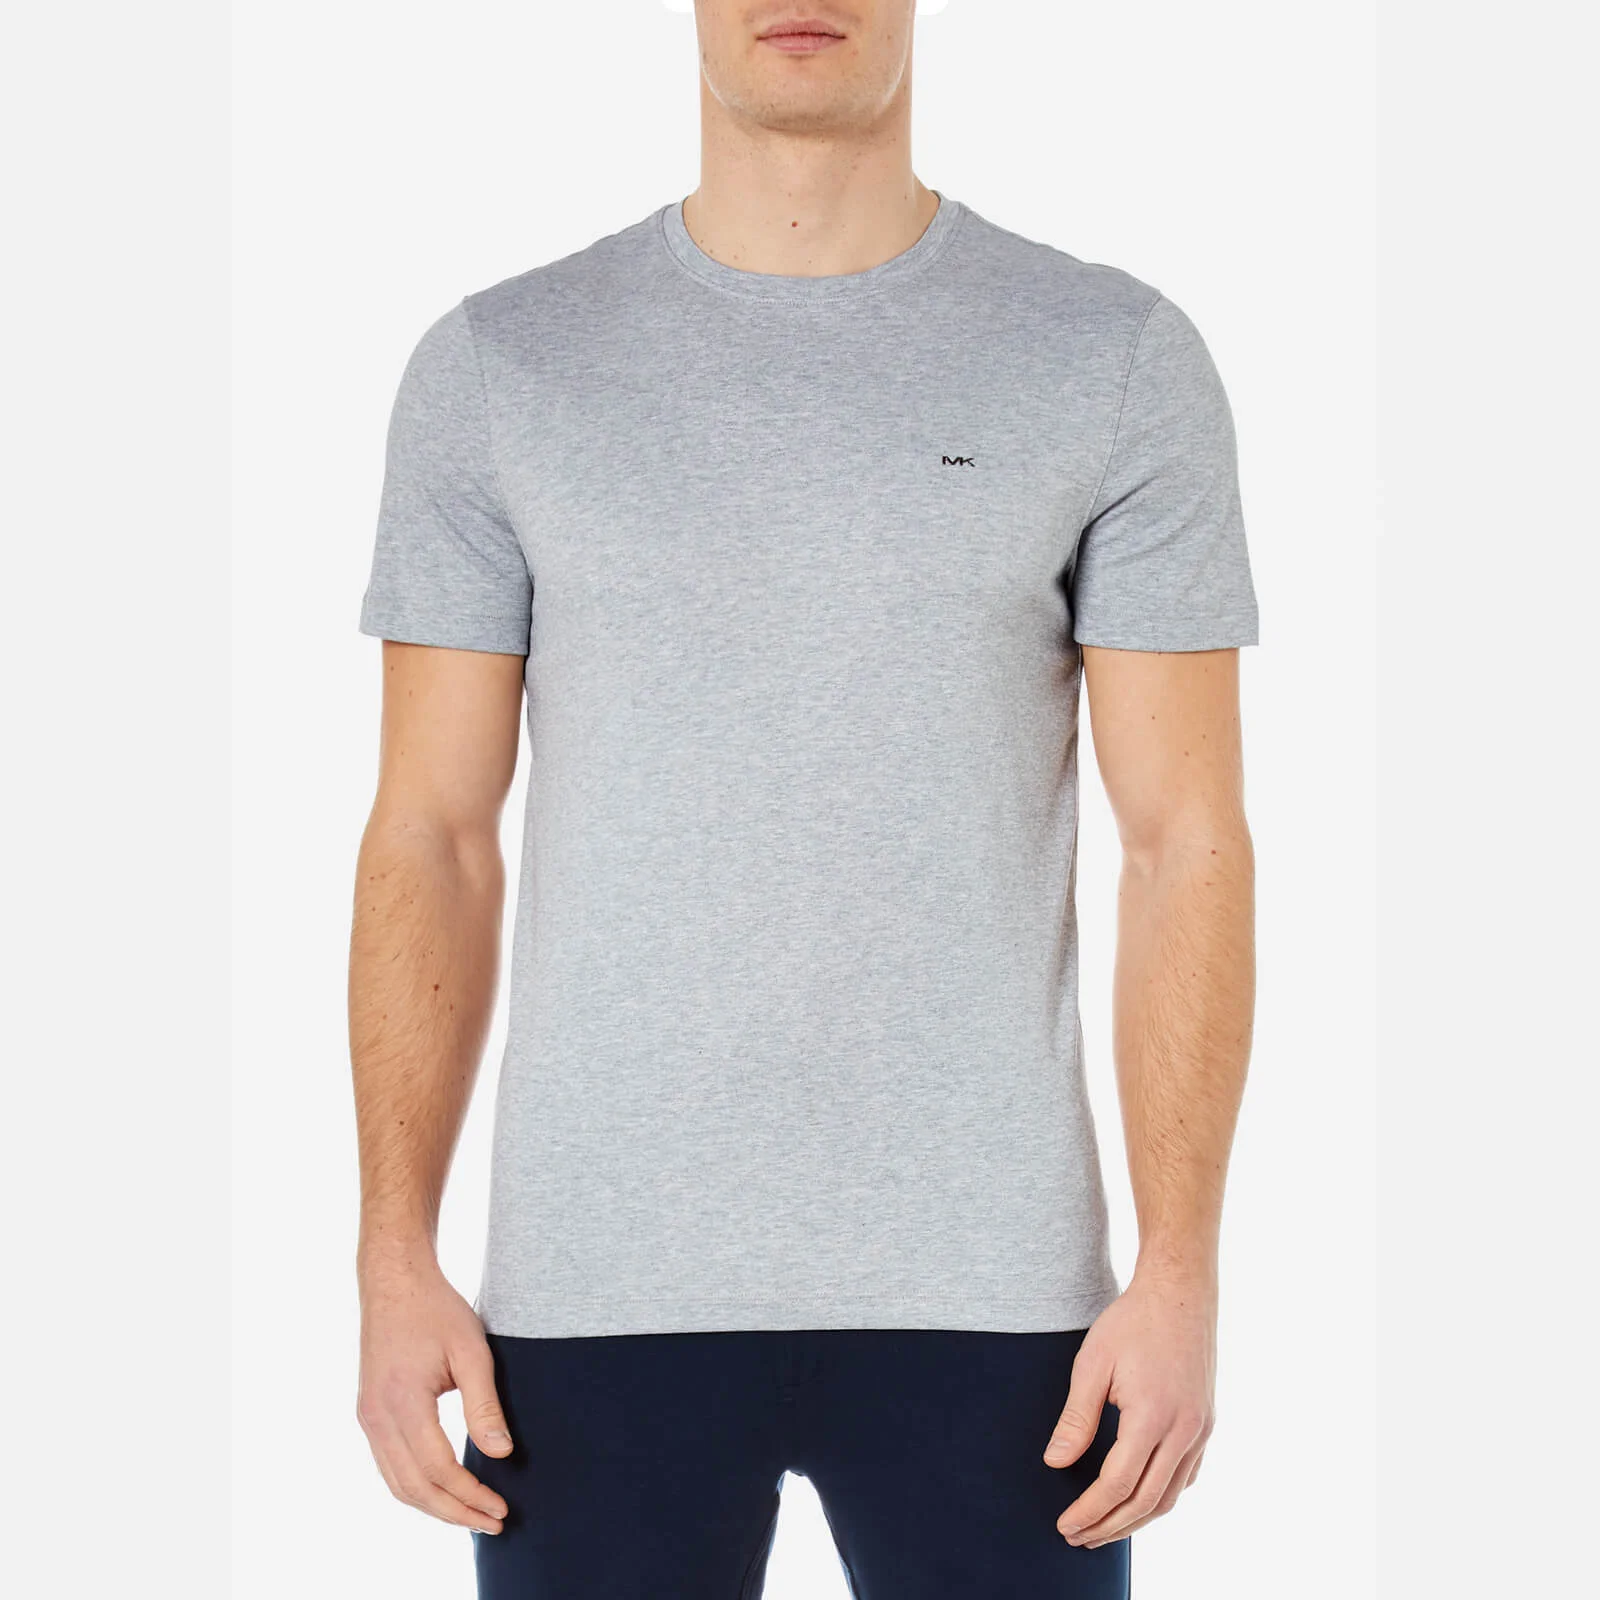 Michael Kors Men's Liquid Jersey Crew Neck Short Sleeve T-Shirt - Heather Grey Image 1